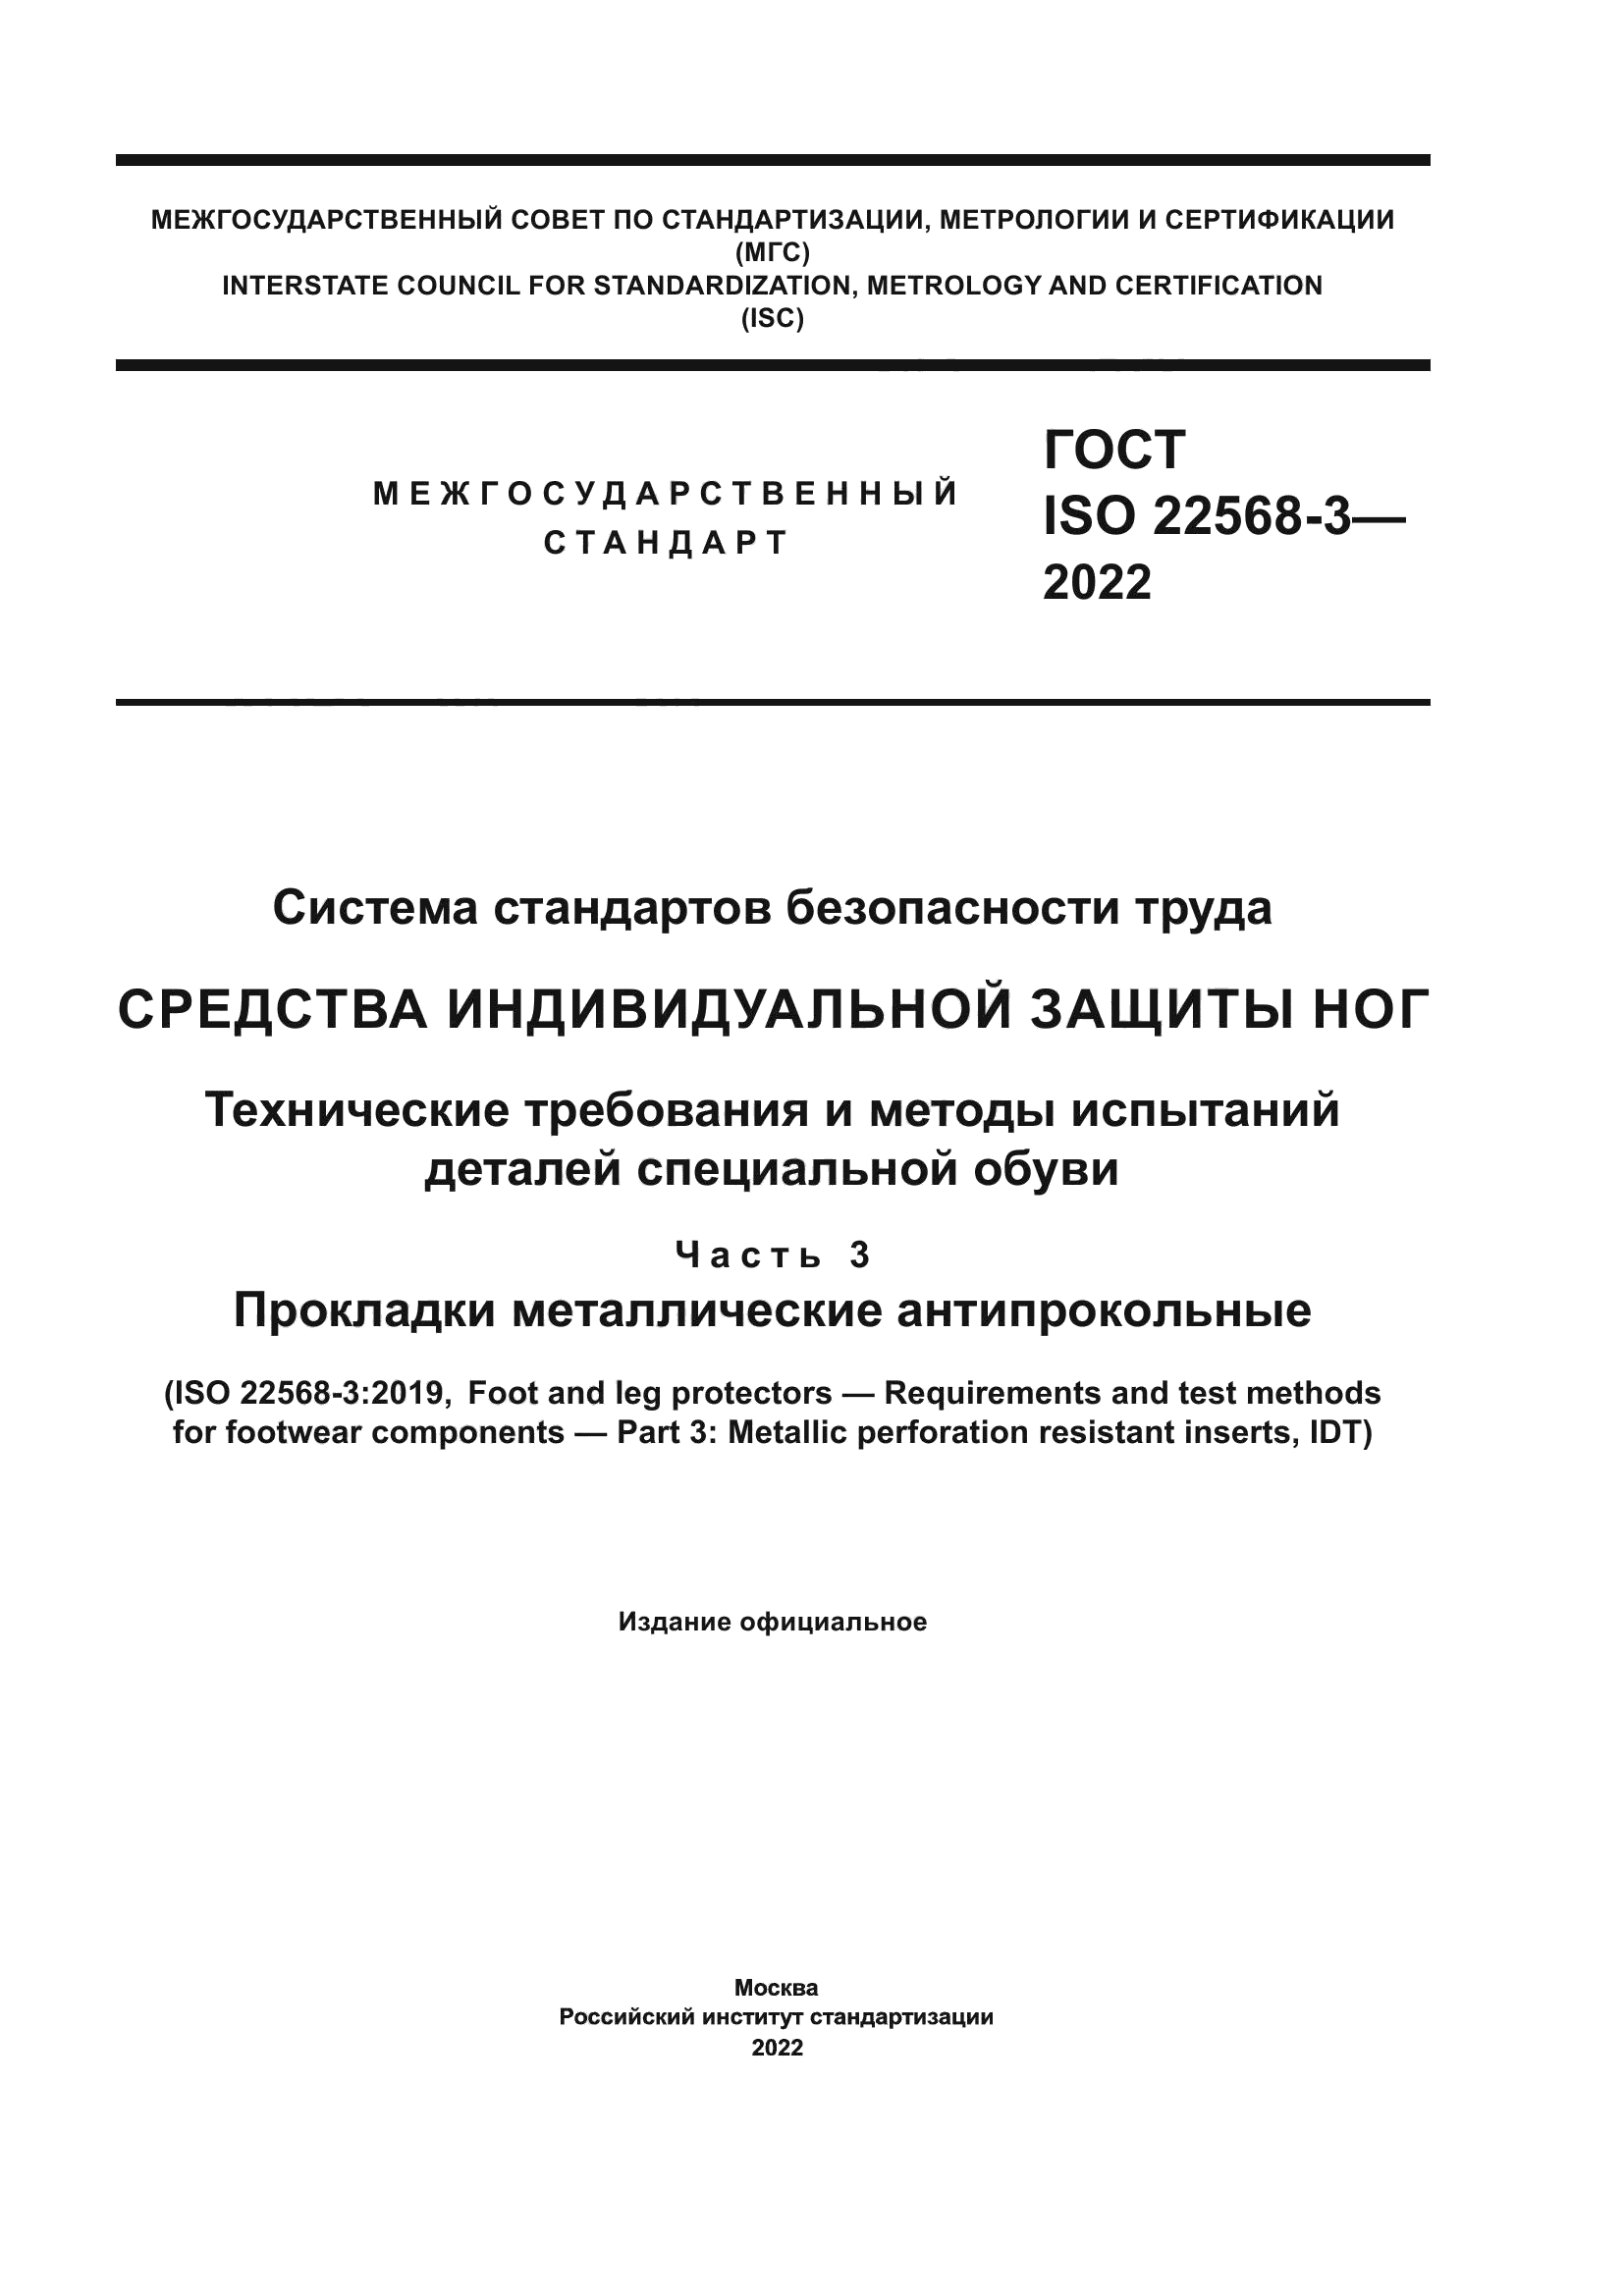 ГОСТ ISO 22568-3-2022